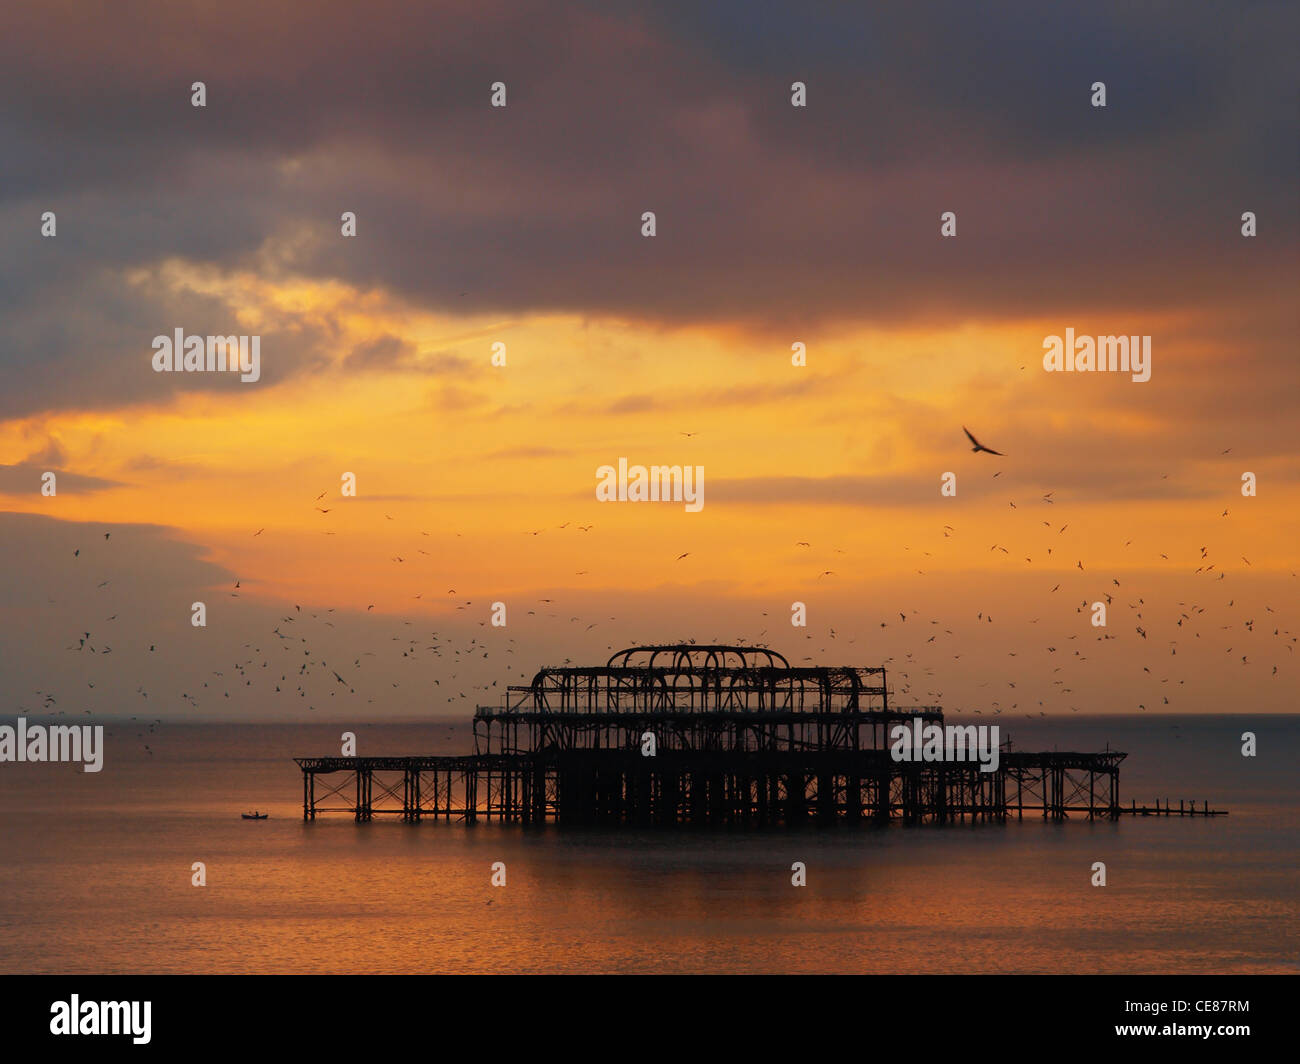 Troupeaux de Seagulls Fly sur la hantise silhouette de Brighton West Pier, que le soleil couchant allume un ciel brillant. Banque D'Images